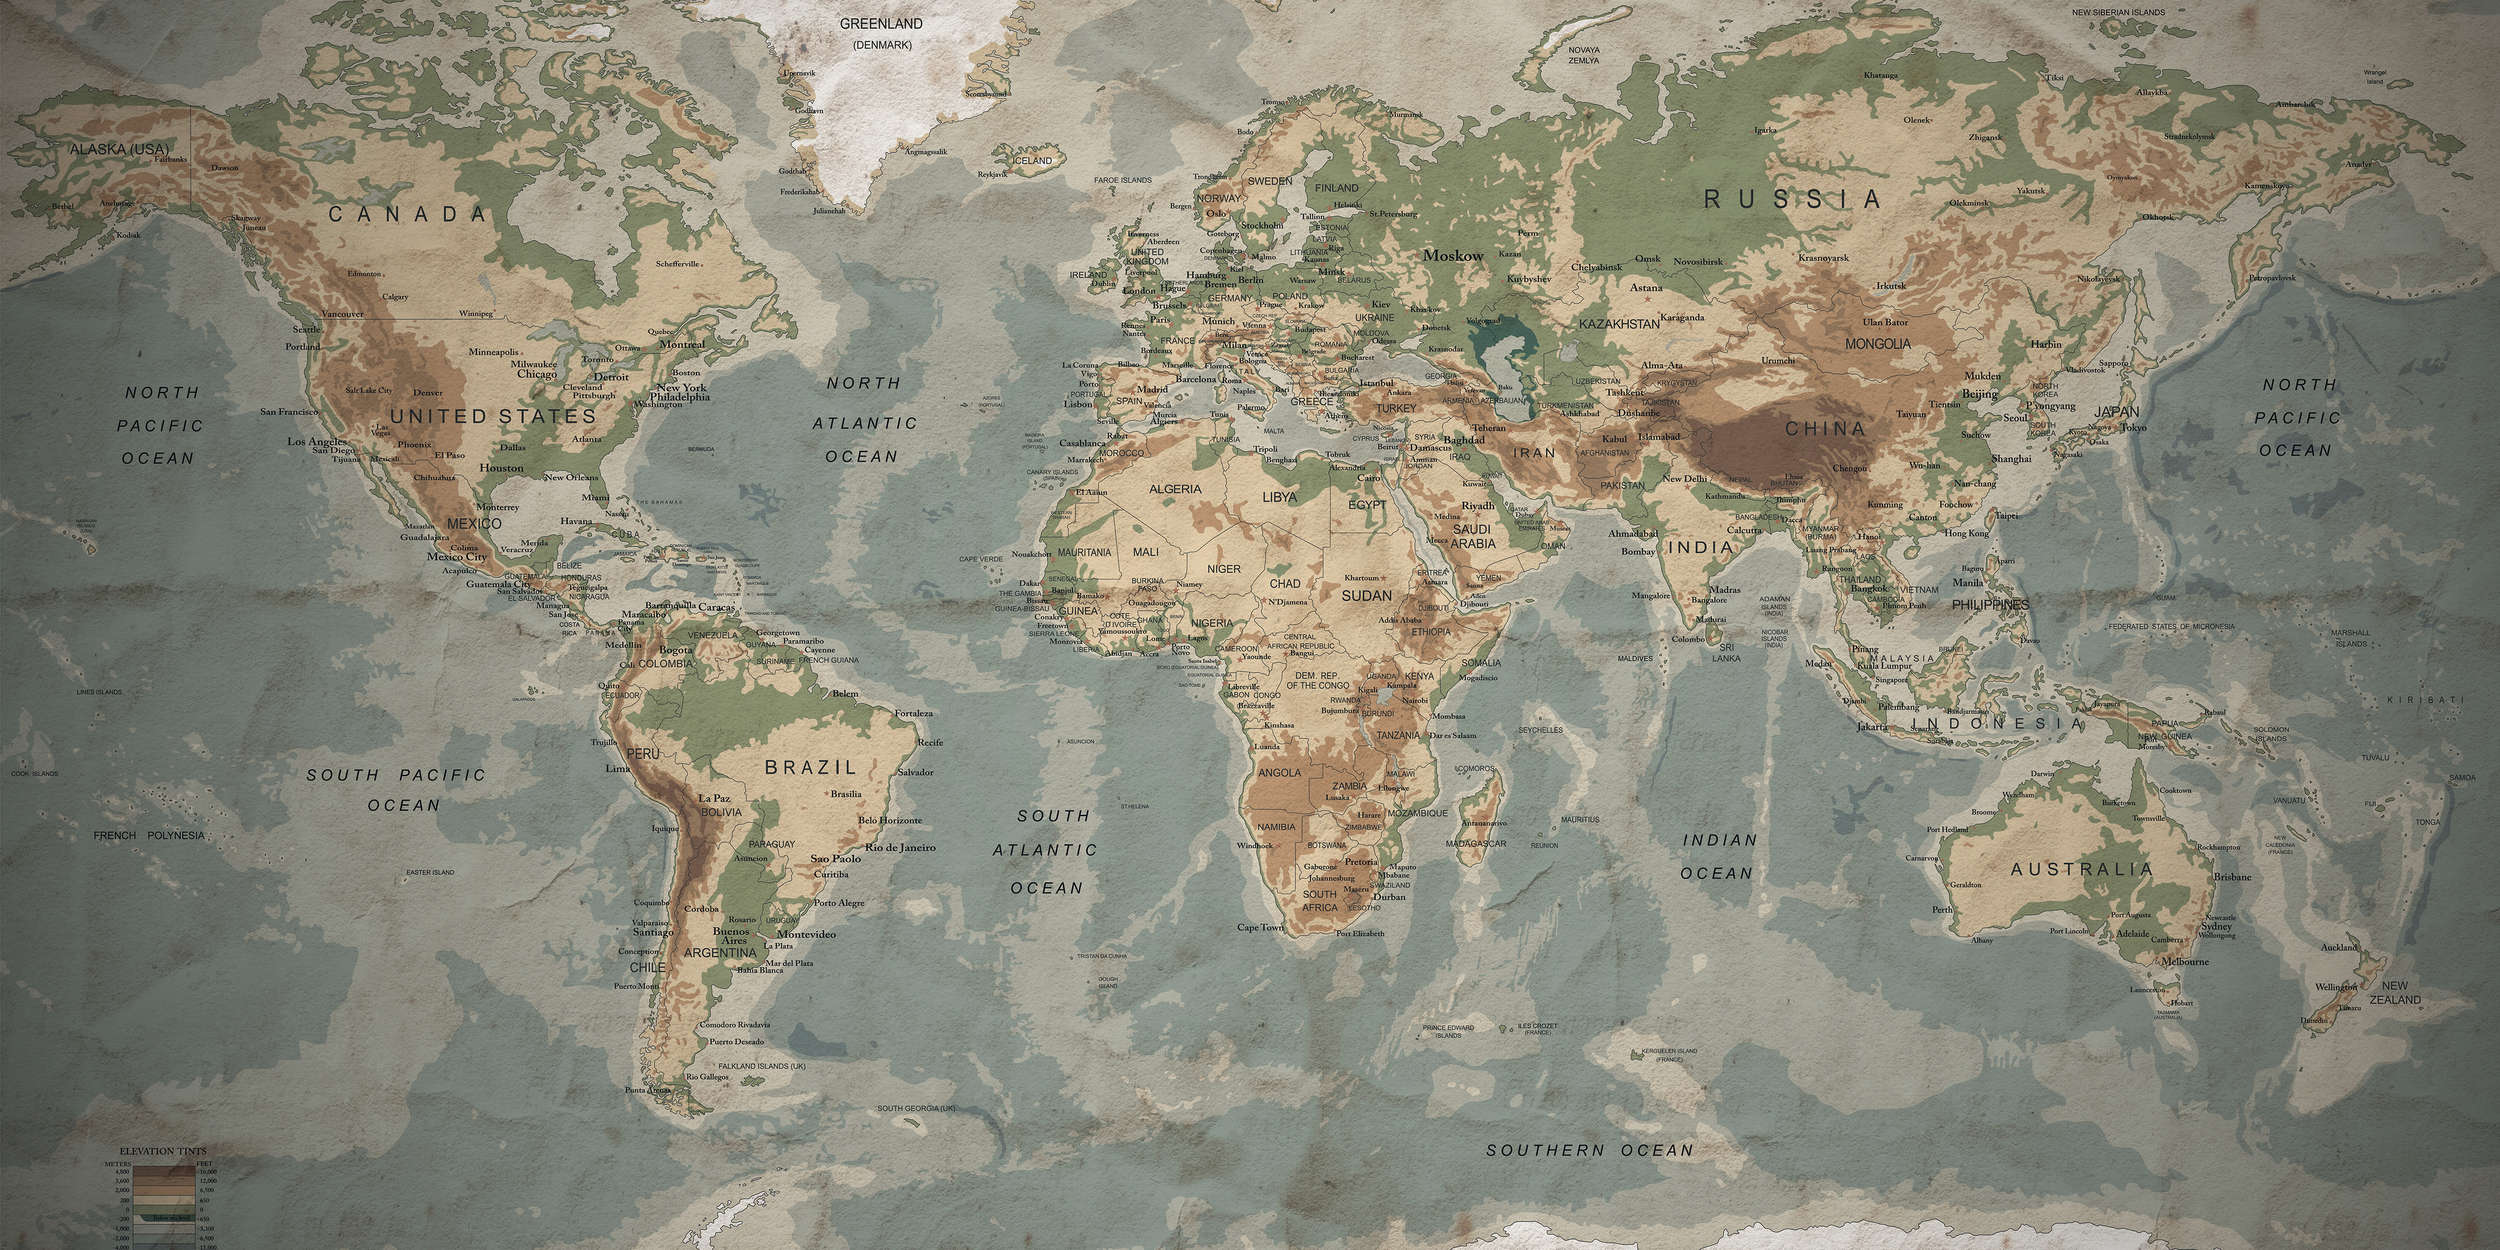             Papel pintado retro Mapa del mundo con diseño tipográfico
        